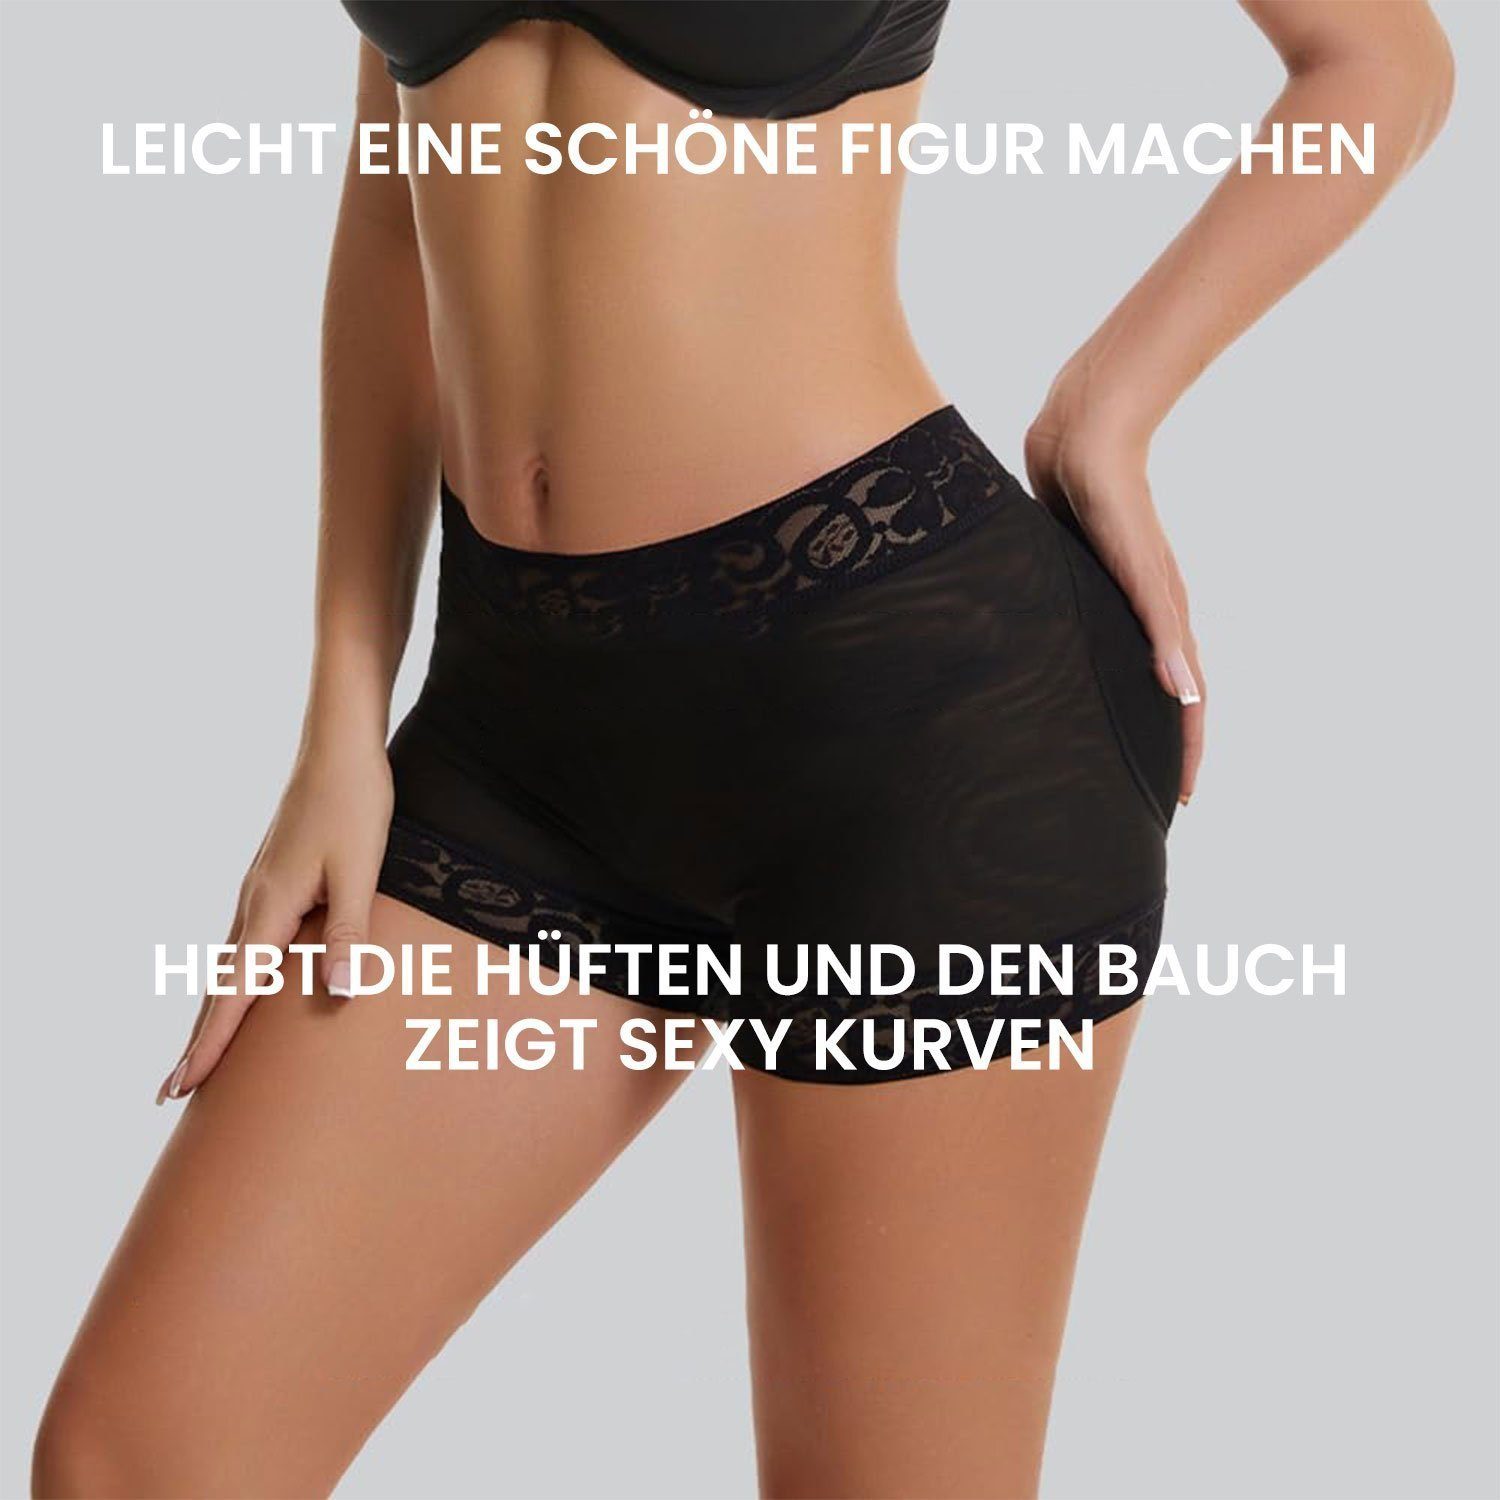 Daisred Shapingslip Butt Enhancers Damen HöSchen Lifter Hüfte Fake Natur Ass